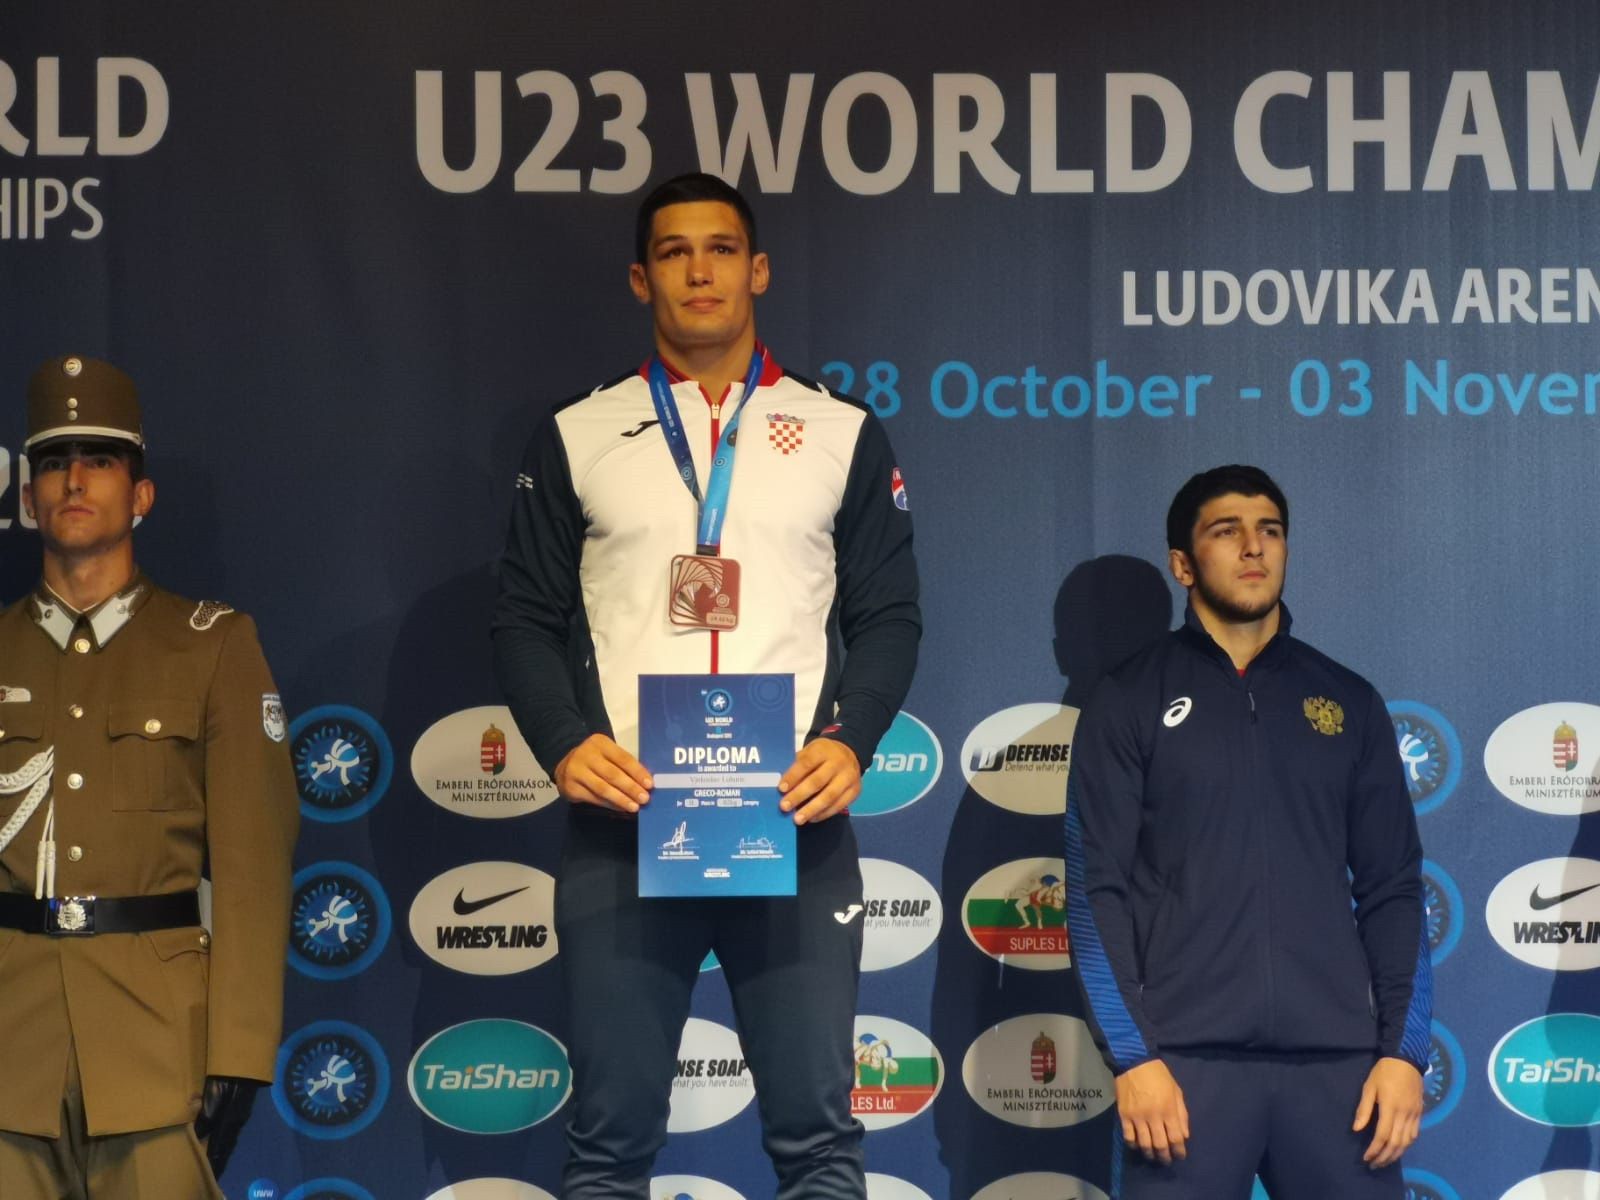 Čestitke Vjekoslavu Luburiću na osvojenom srebrnom odličju u kategoriji do 82 kg na Svjetskom prvenstvu U23 u hrvanju grčko rimskim načinom 